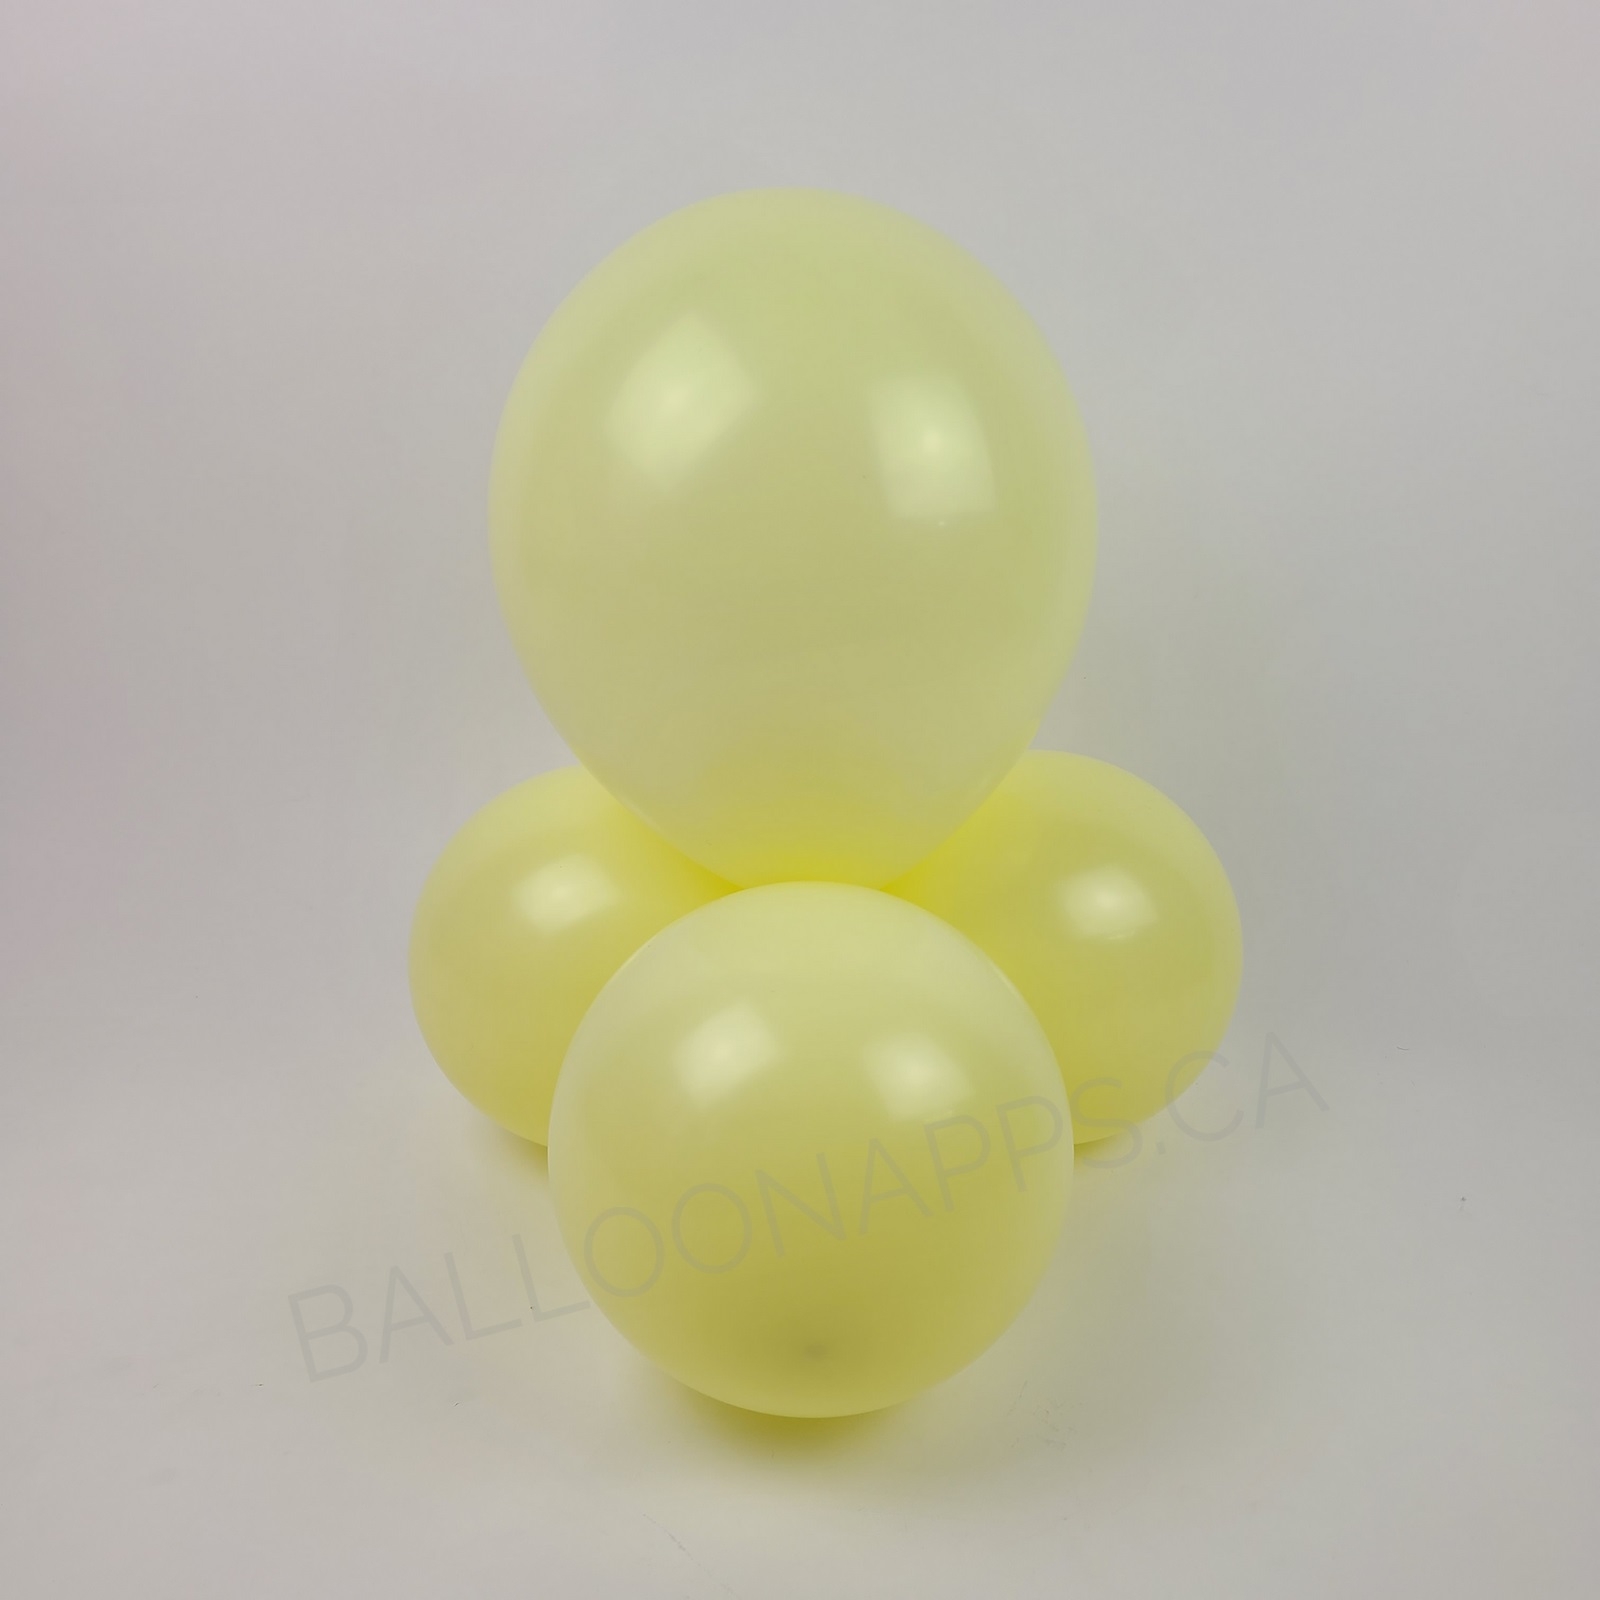 balloon texture TUFTEX (50) 17